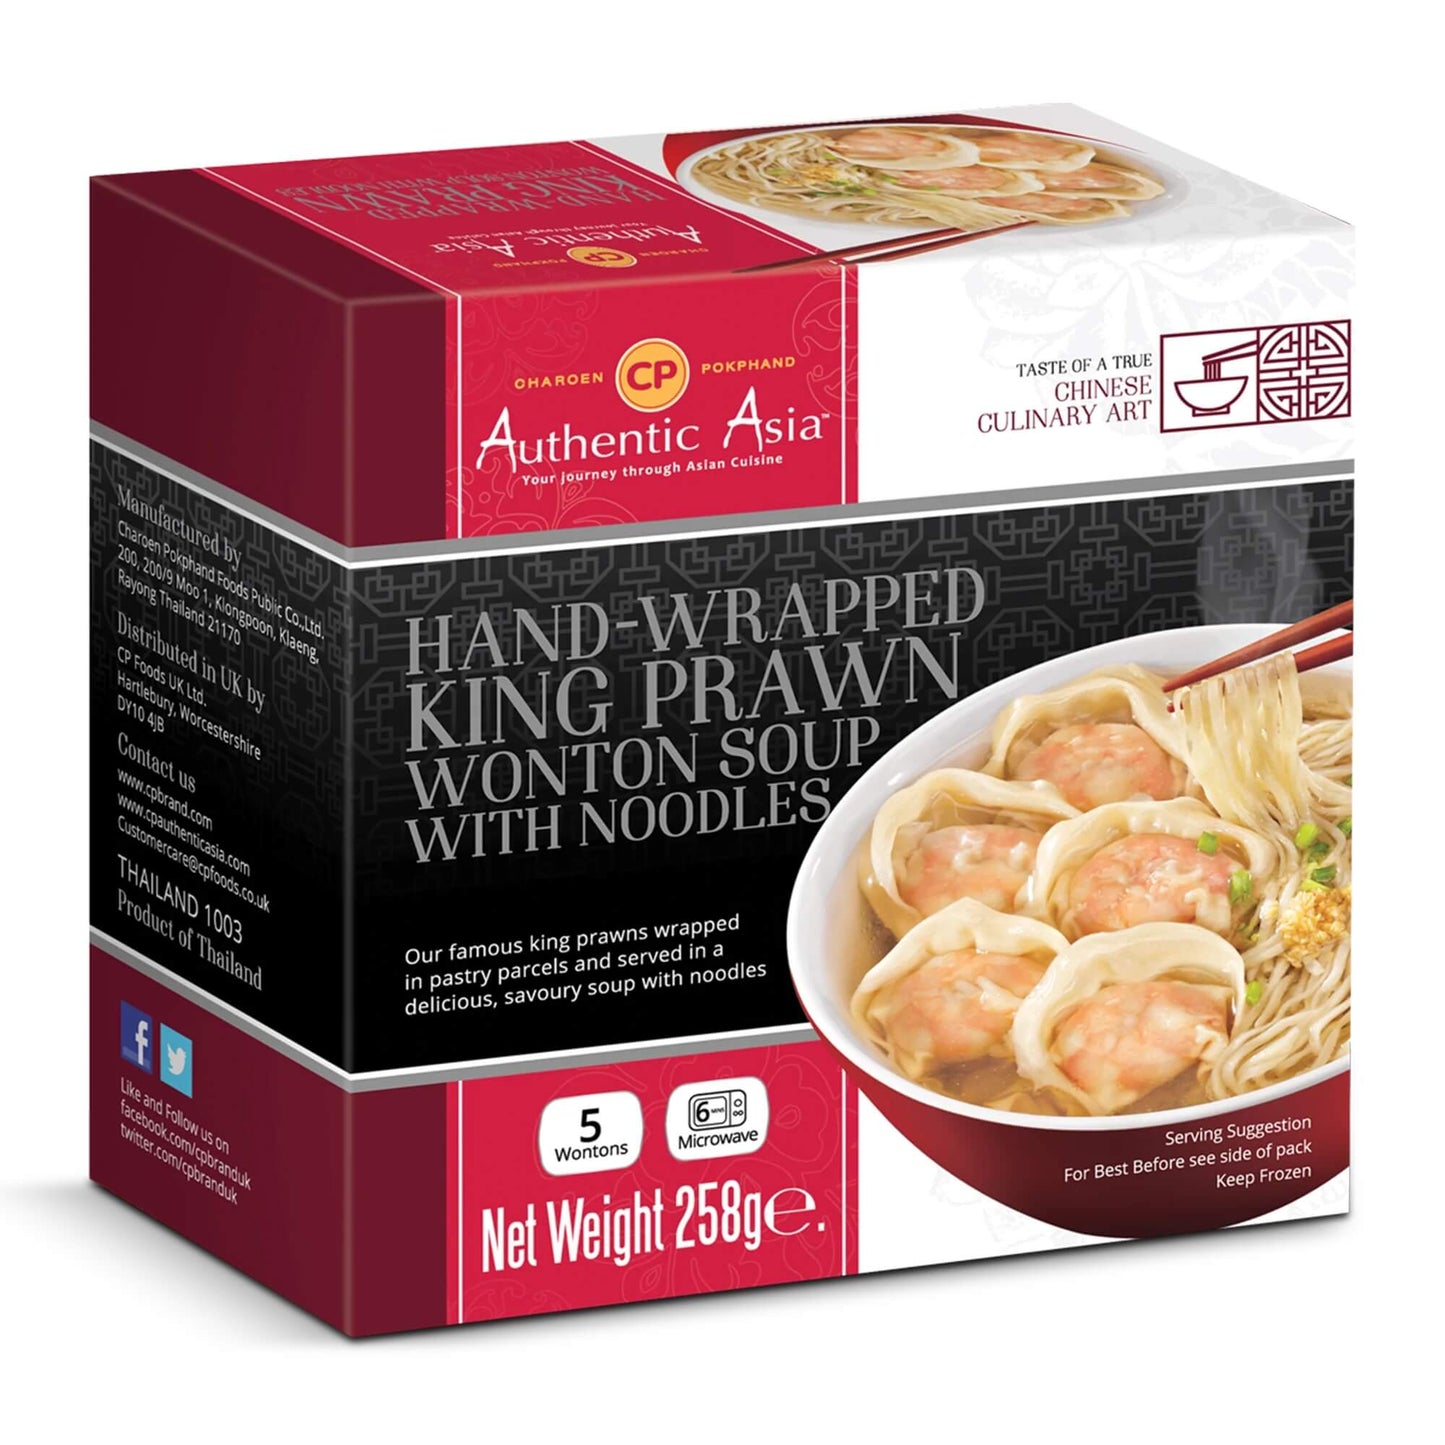 CP Prawn Wonton Soup with Noodles